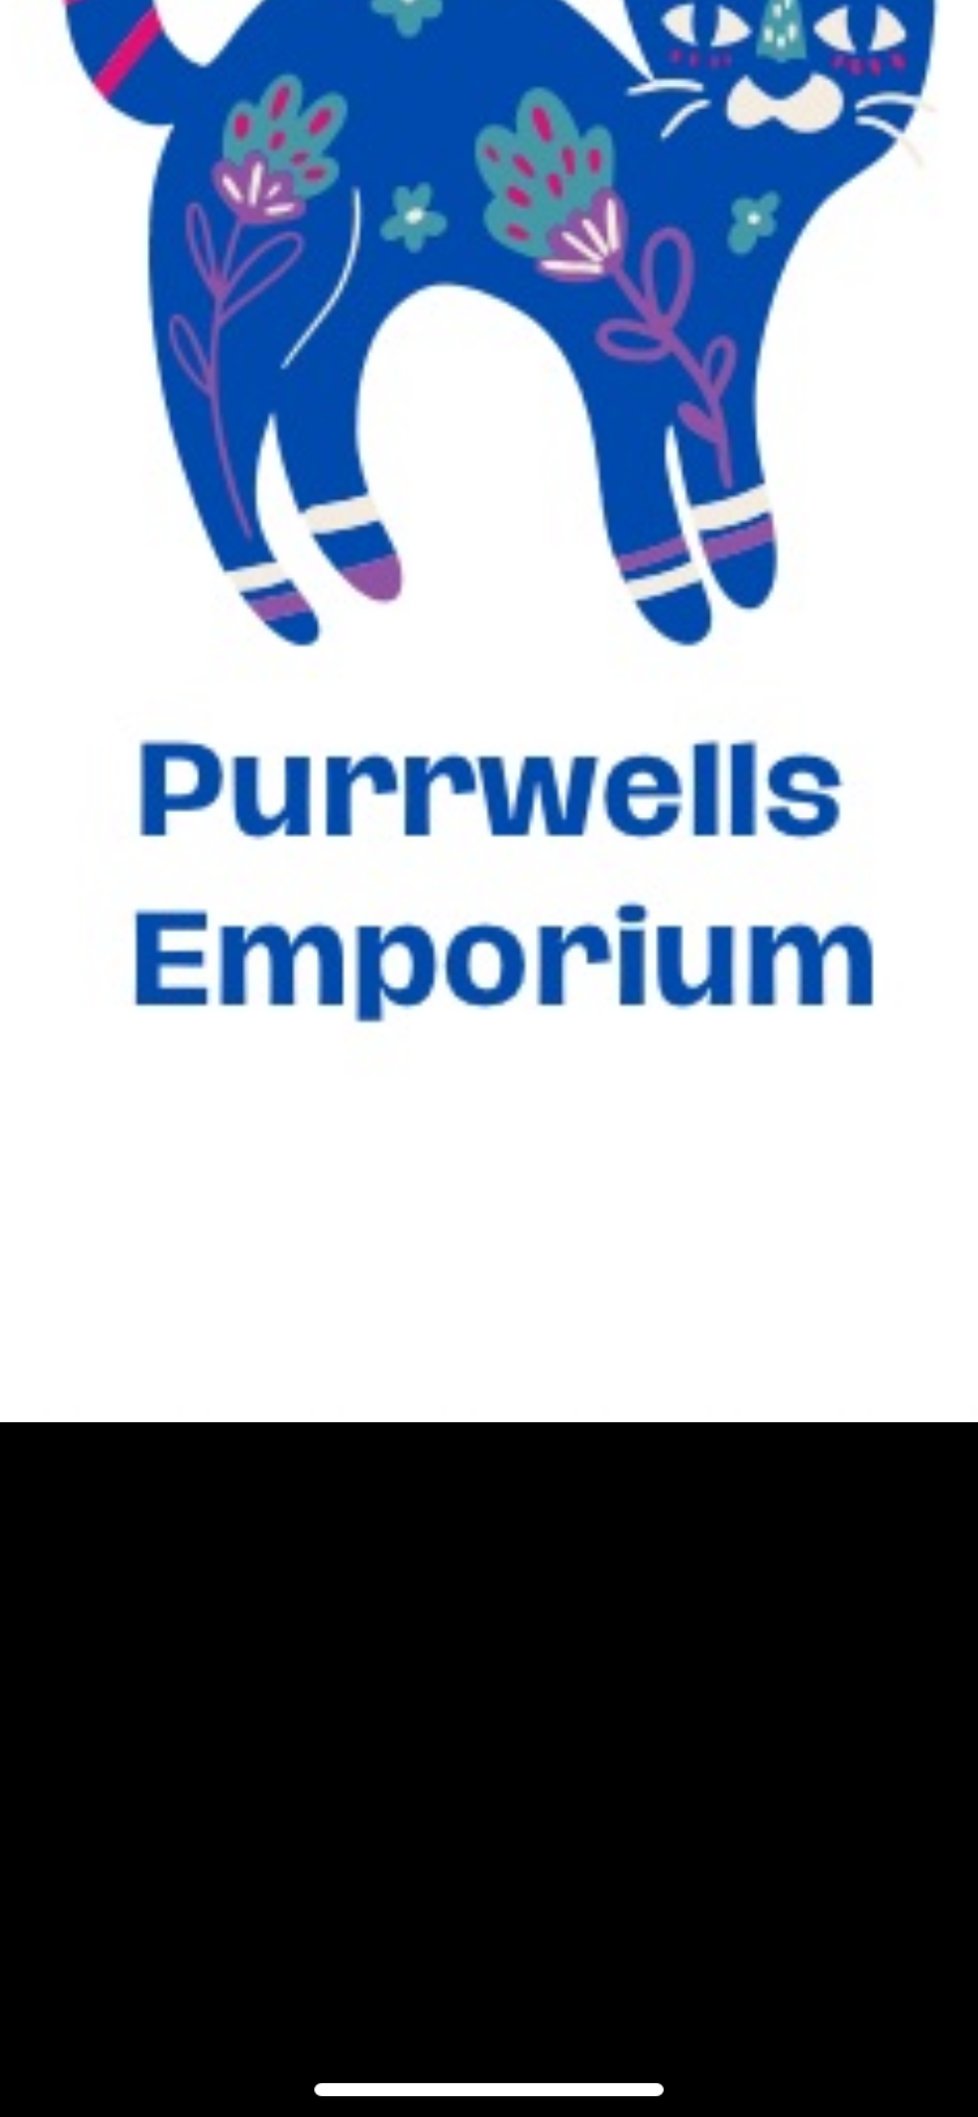 Purrwells Emporium 